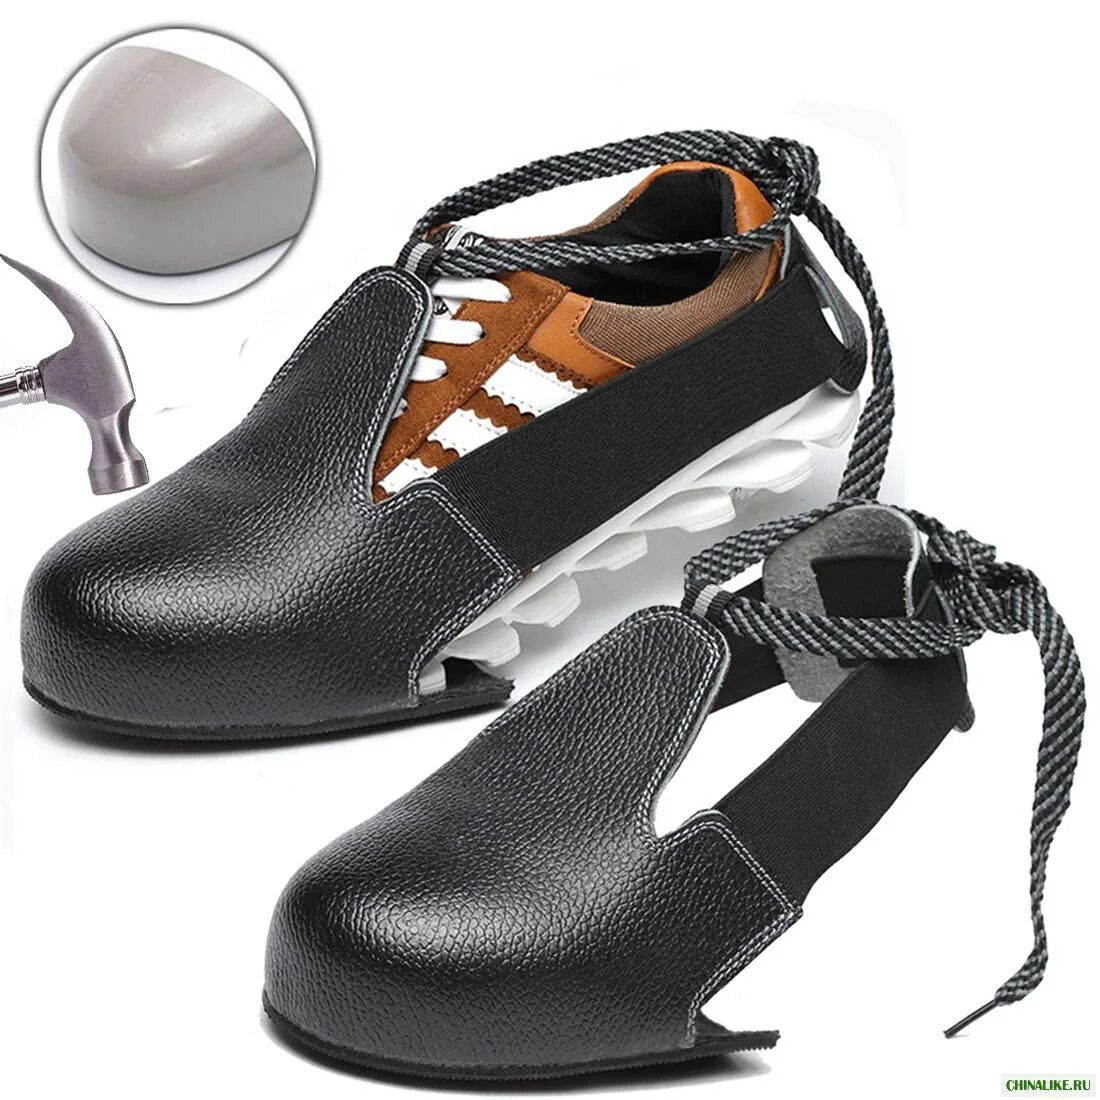 Защита обуви купить. Подносок защитный съемный универсальный (размер 35-45). Обувь защитный съемный универсальный (размер 35-45). Steel Toe обувь. Защитные подноски на обувь.